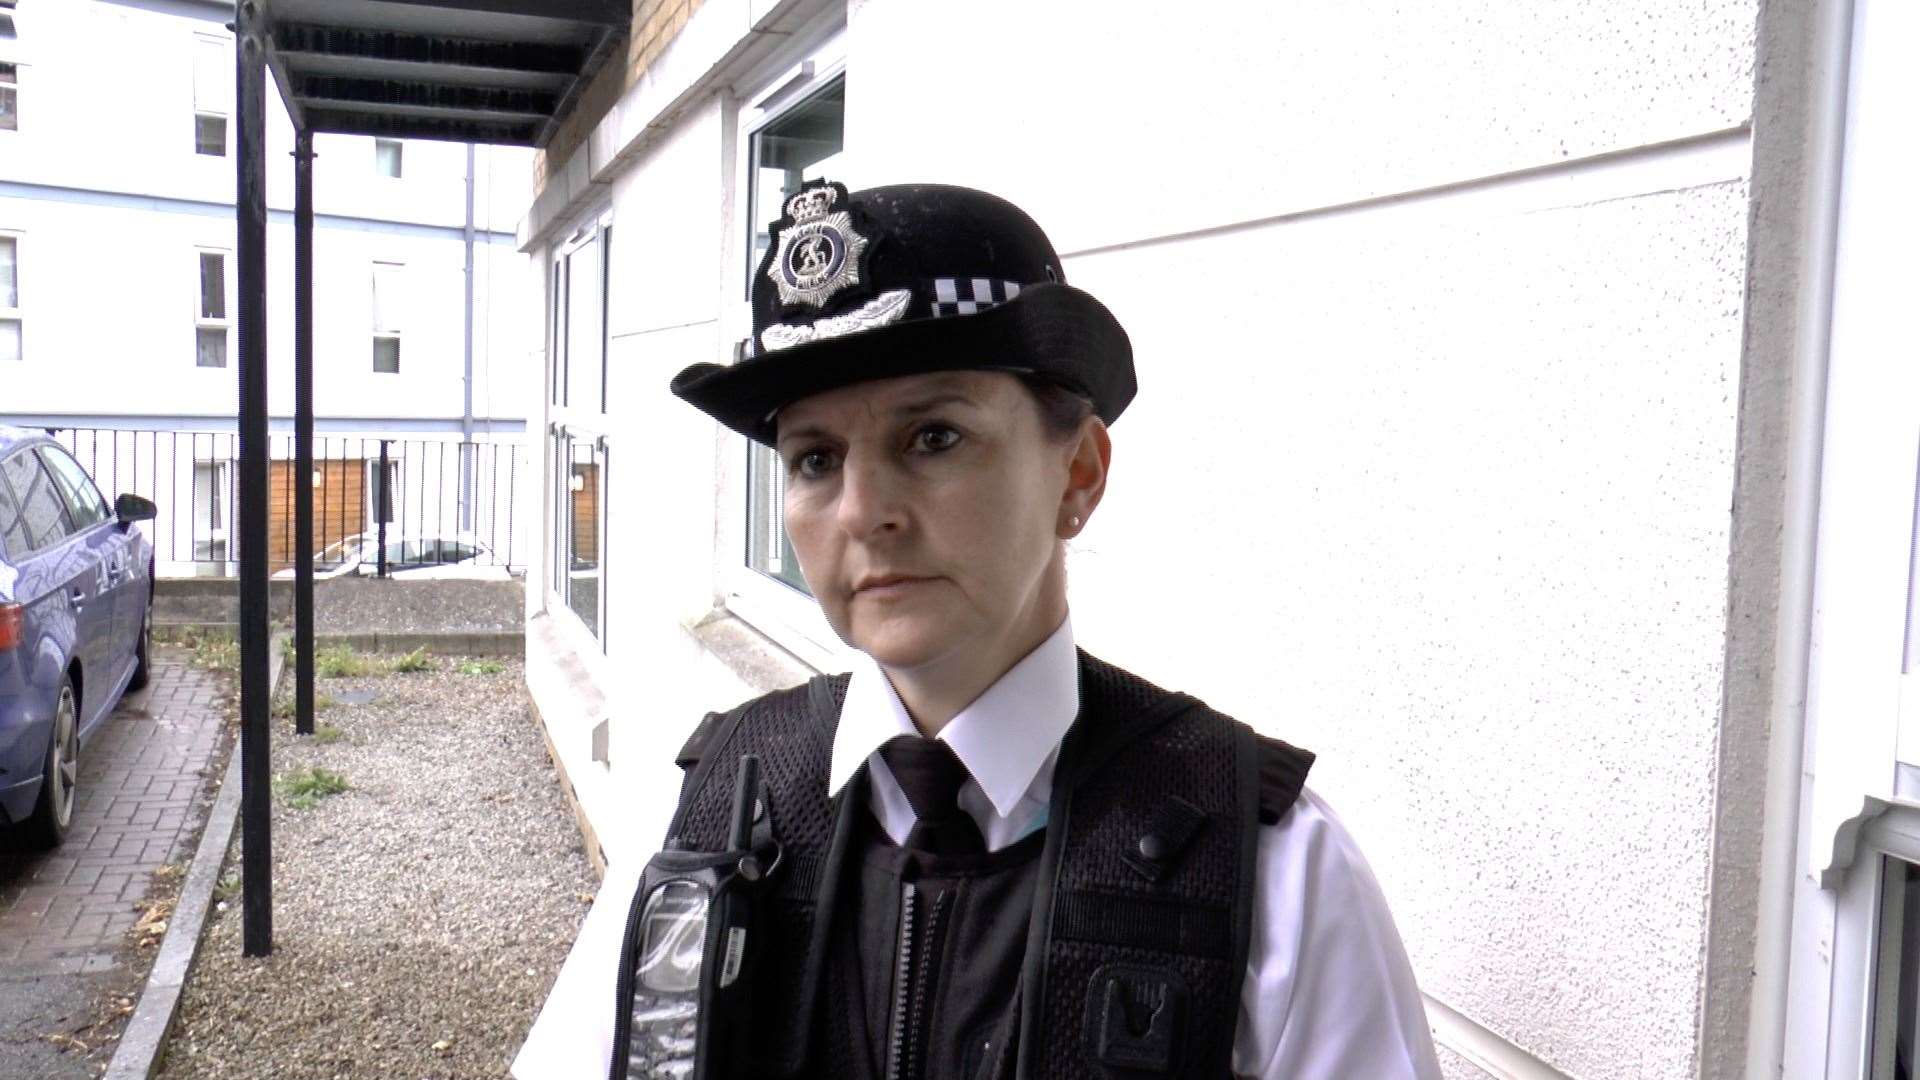 Assistant Chief Constable Nicola Faulconbridge